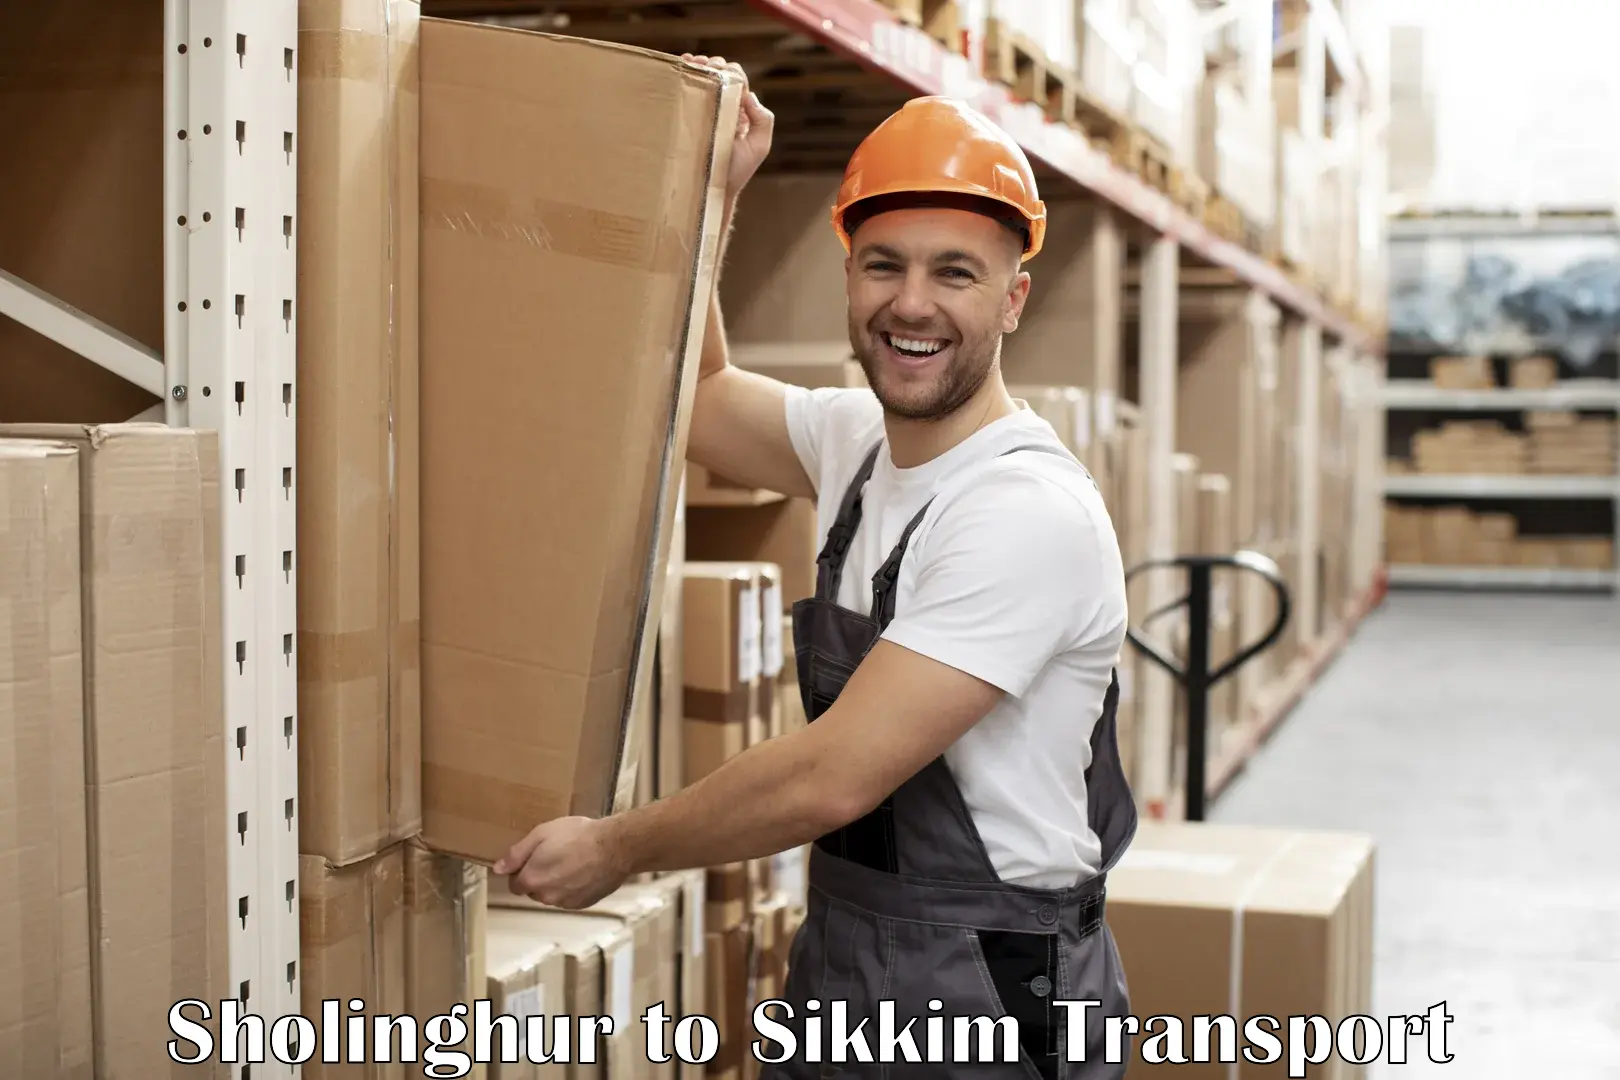 Furniture transport service Sholinghur to Pelling